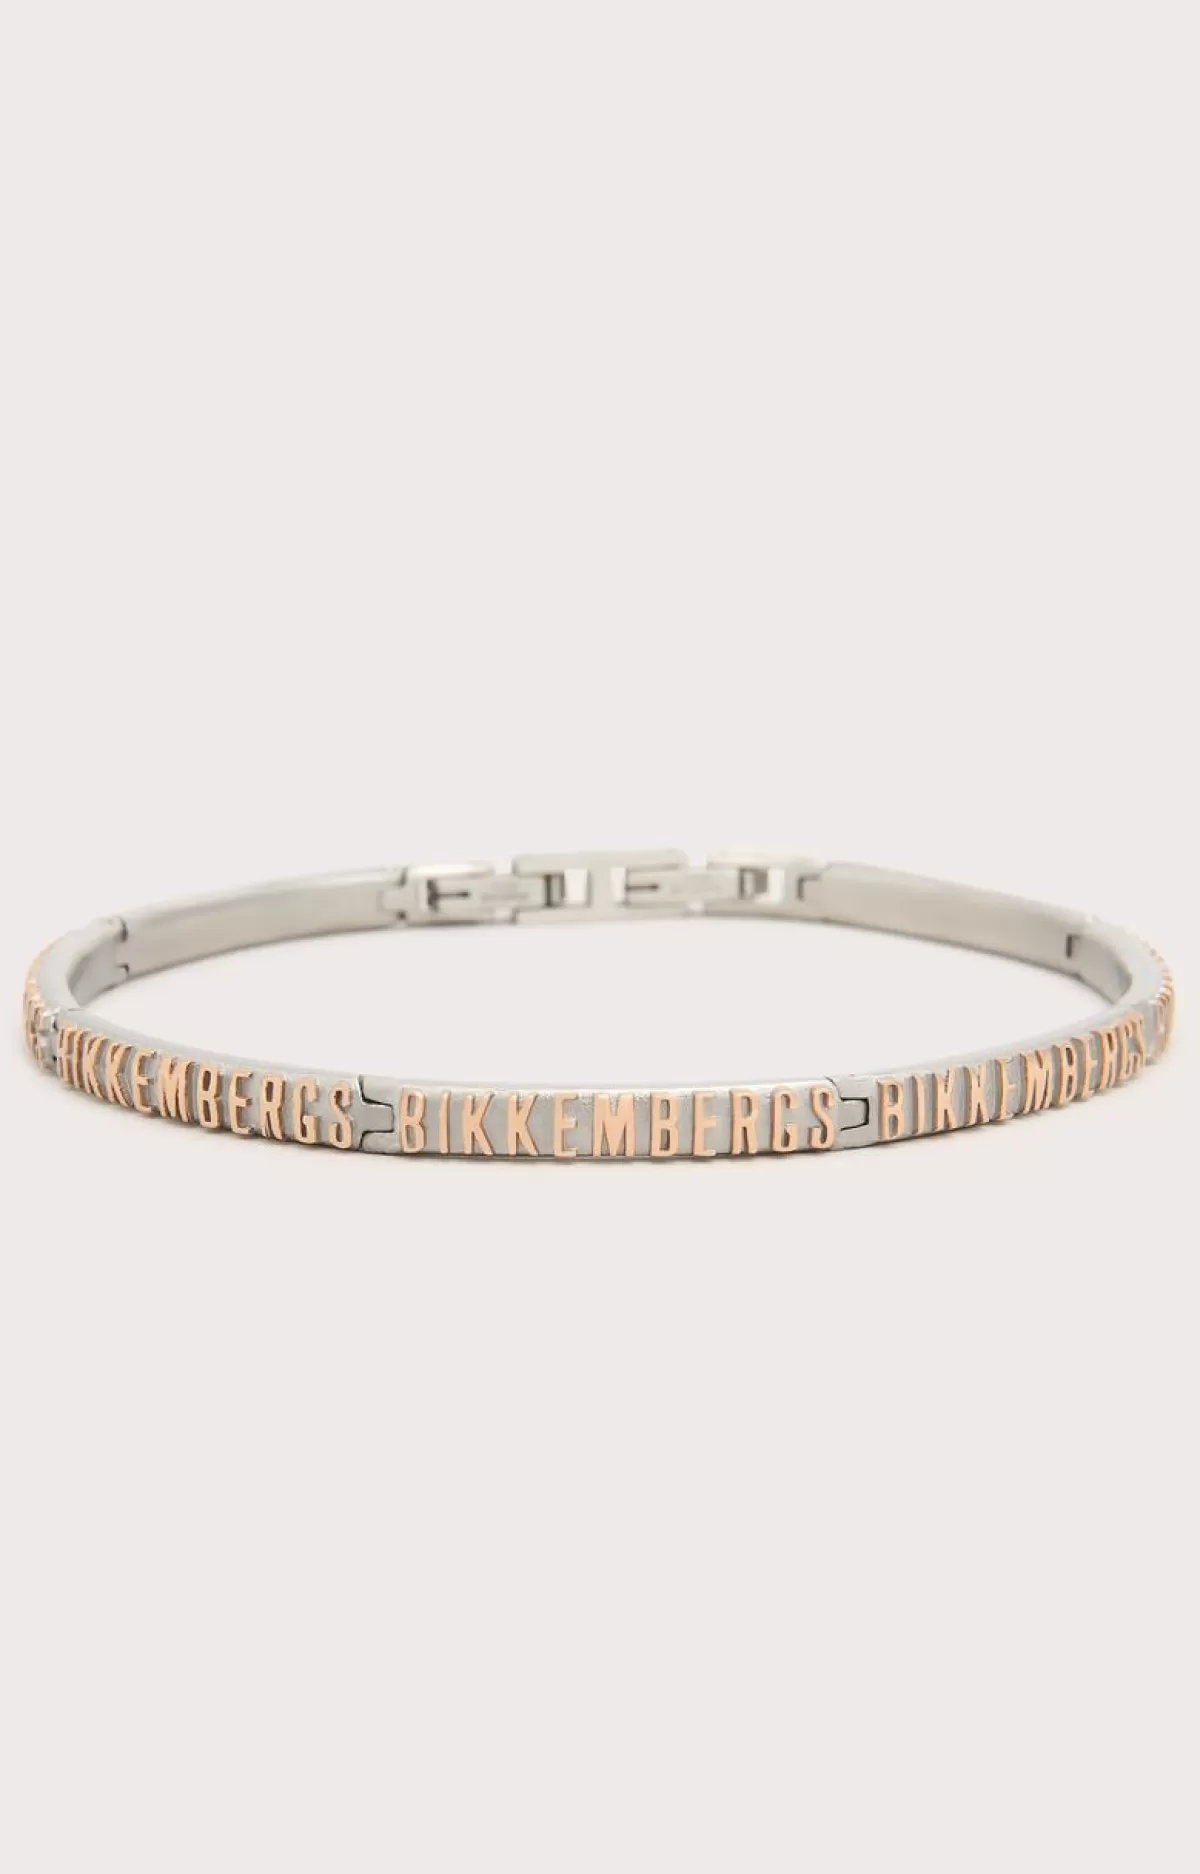 Bikkembergs Men'S Bracelet With Embossed Lettering 280 Discount